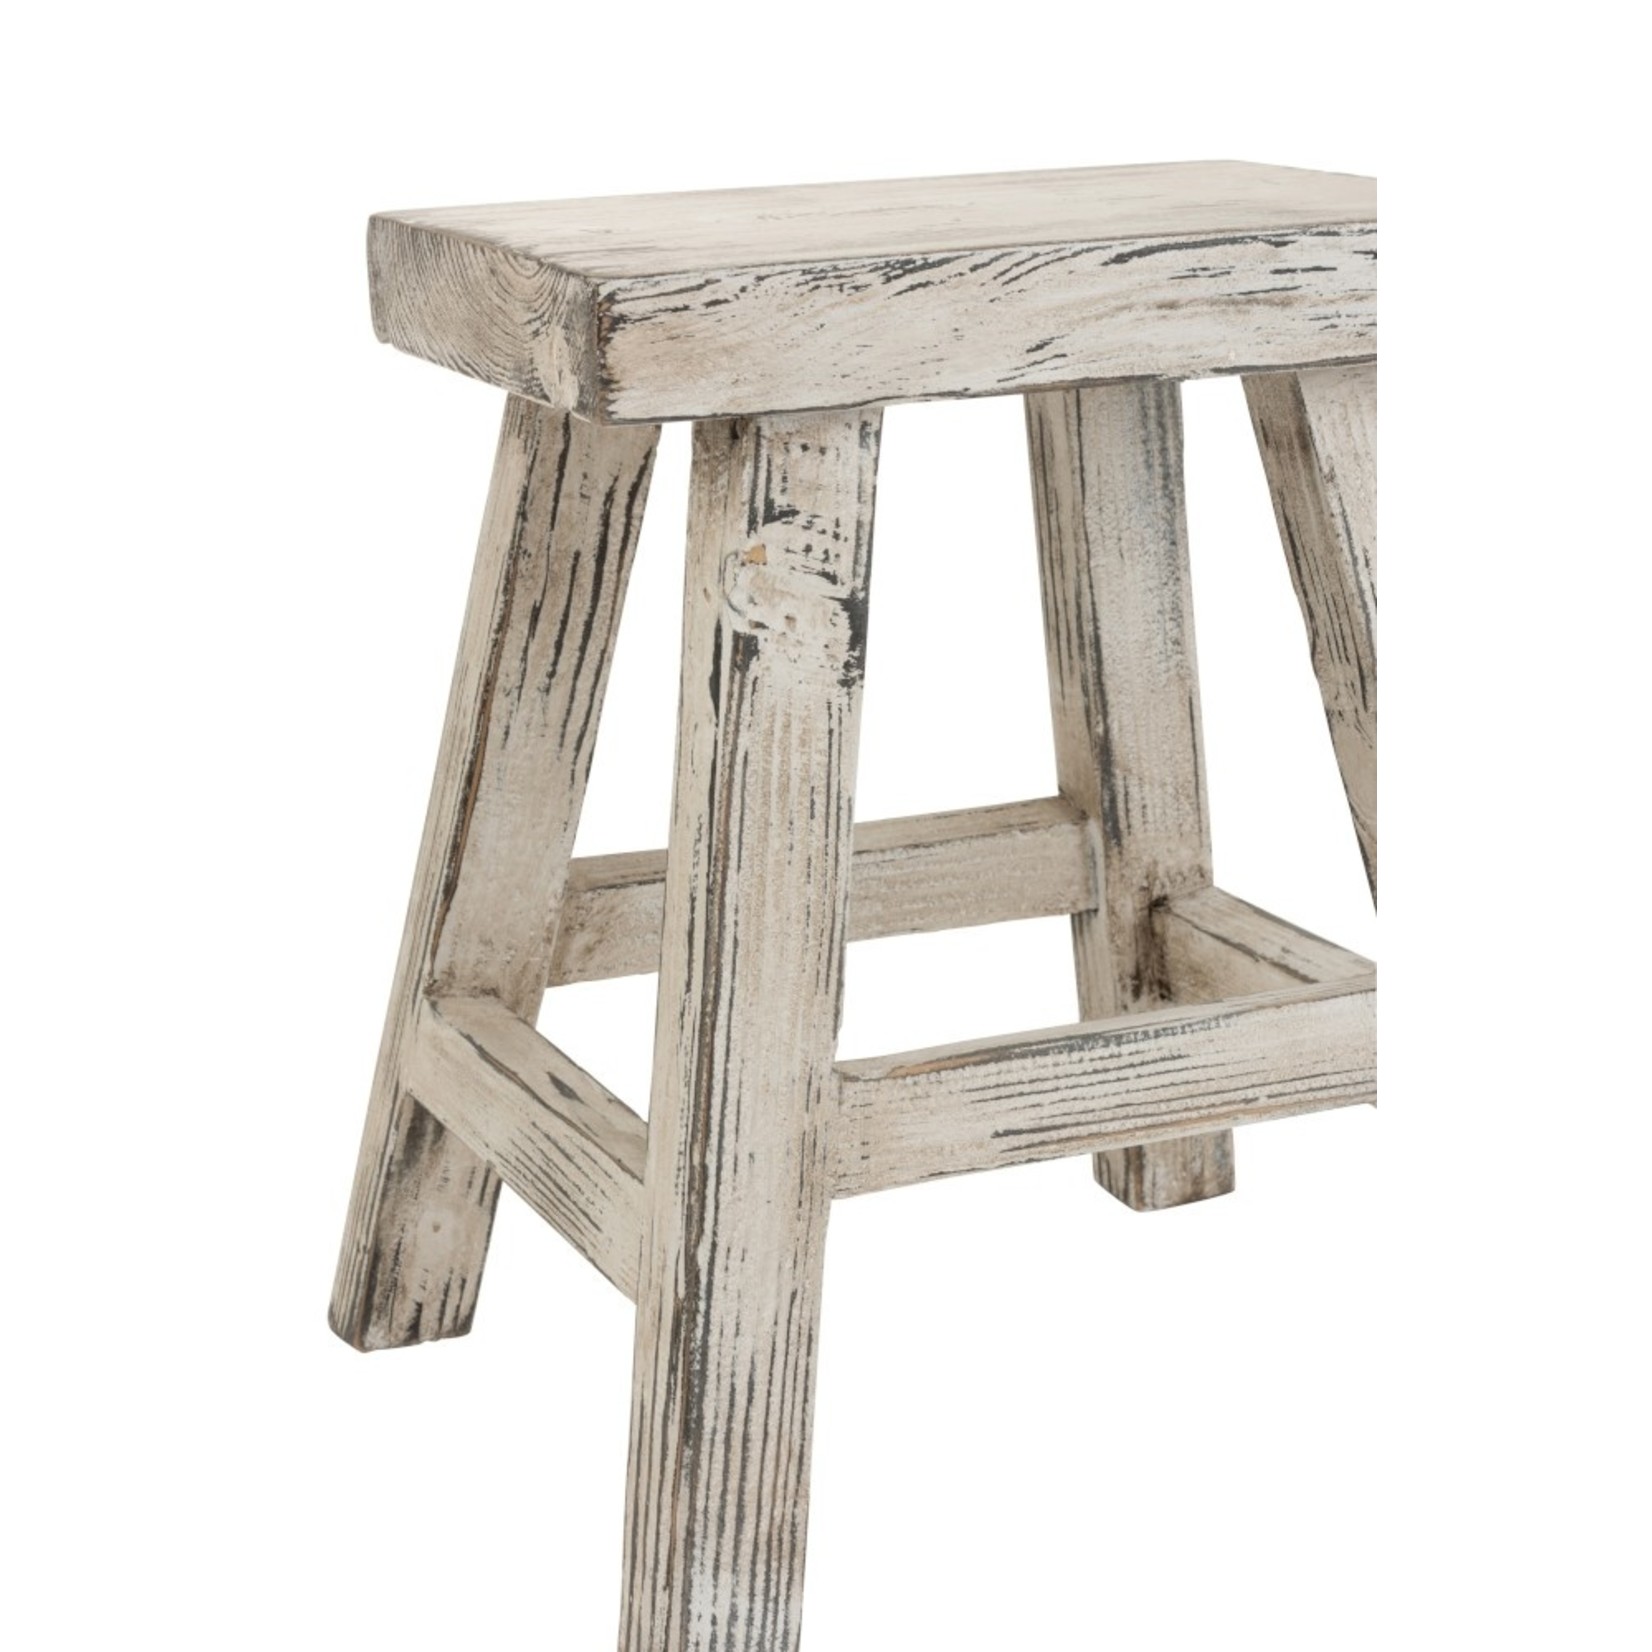 J-Line Side stool Ibiza Style Rectangle Wood - White Wash